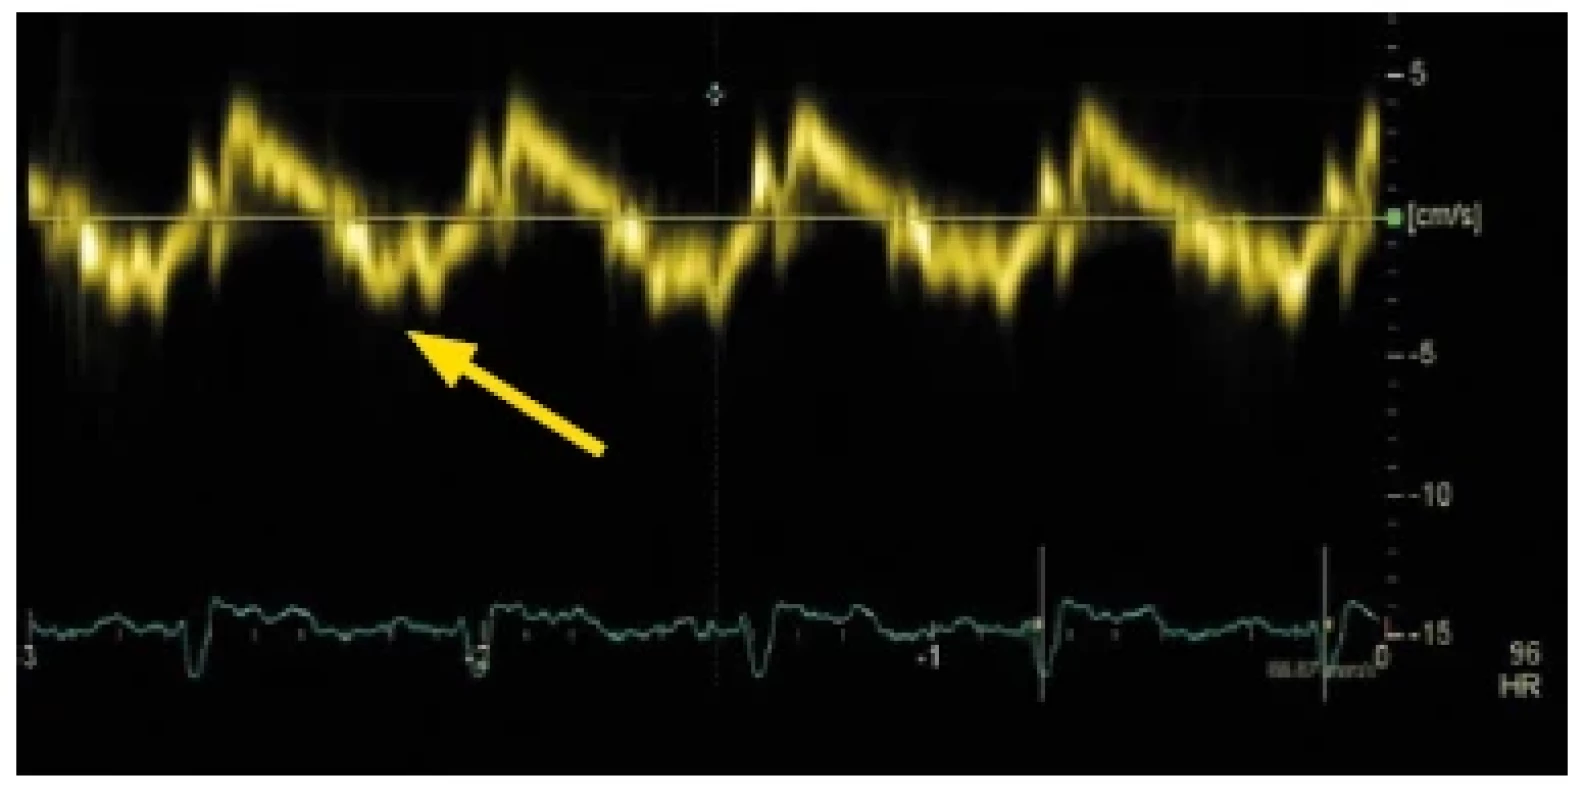 Tkáňově pulzní dopplerovský záznam pohybu septálního okraje
mitrálního anulu u nemocného s restriktivní kardiomyopatií. Významné
snížení rychlosti vlny e´(znázorněno šipkou)